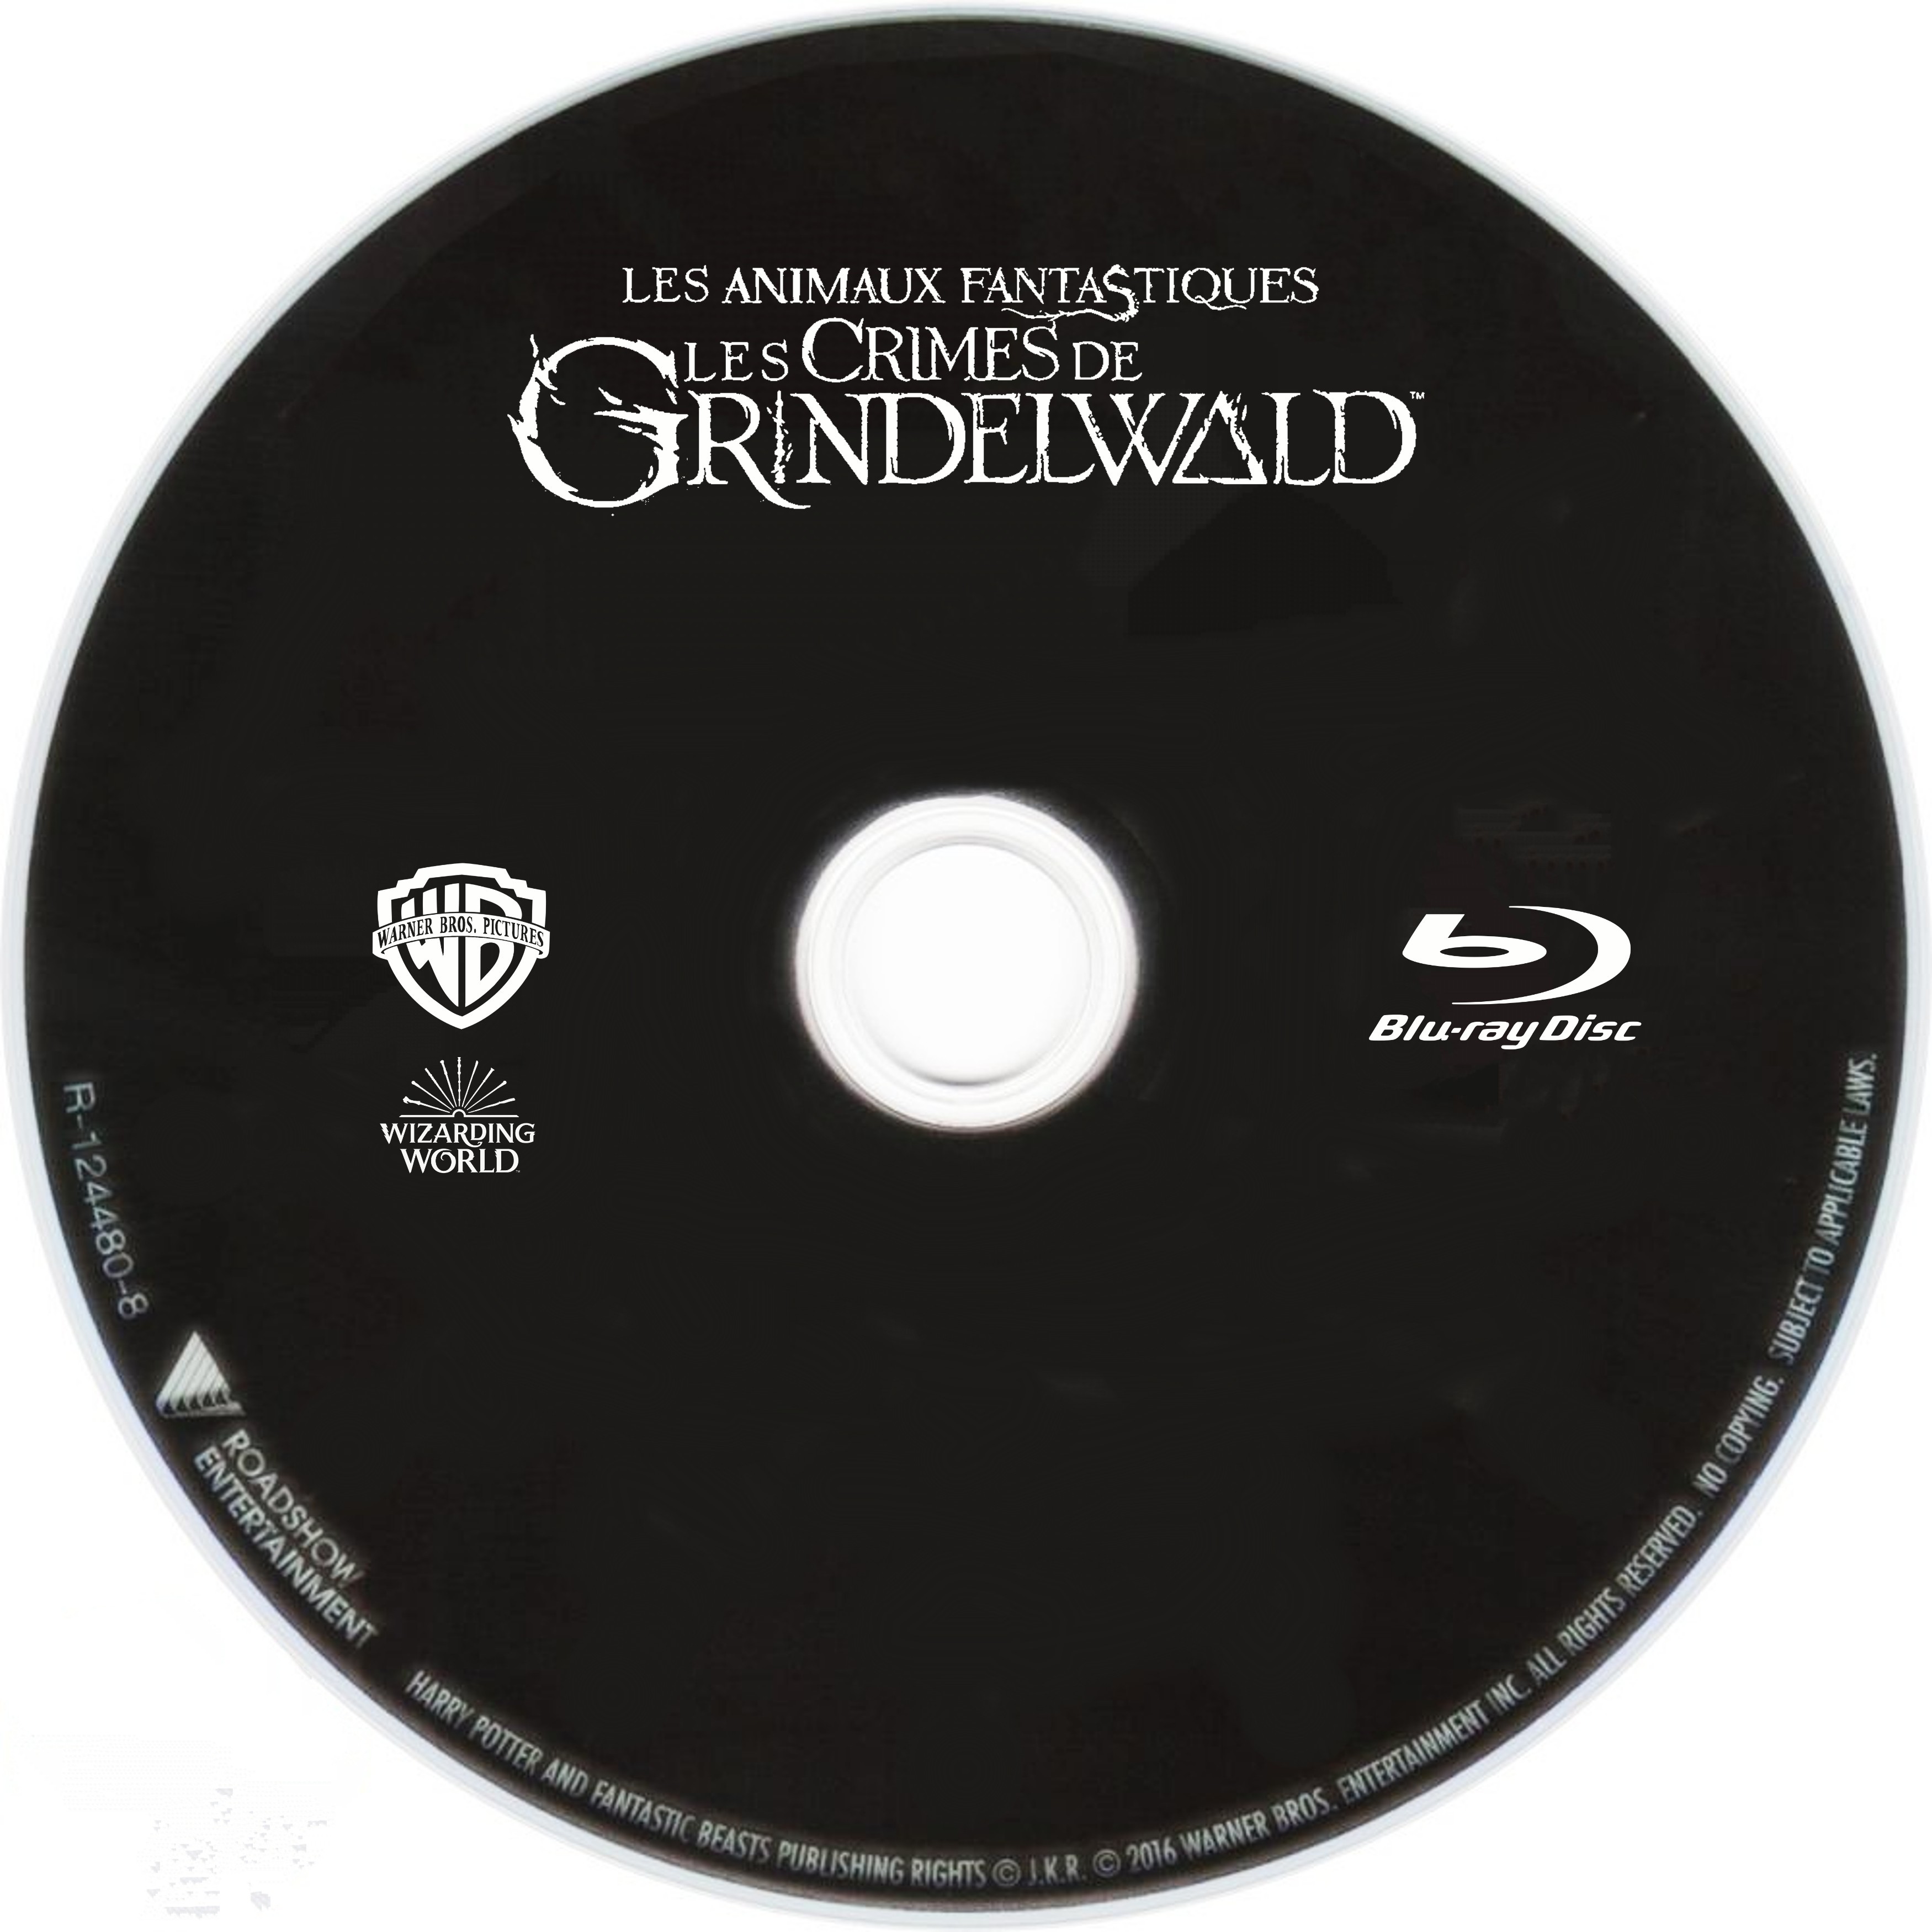 Les animaux fantastiques Les crimes de Grindelwald (BLU-RAY)